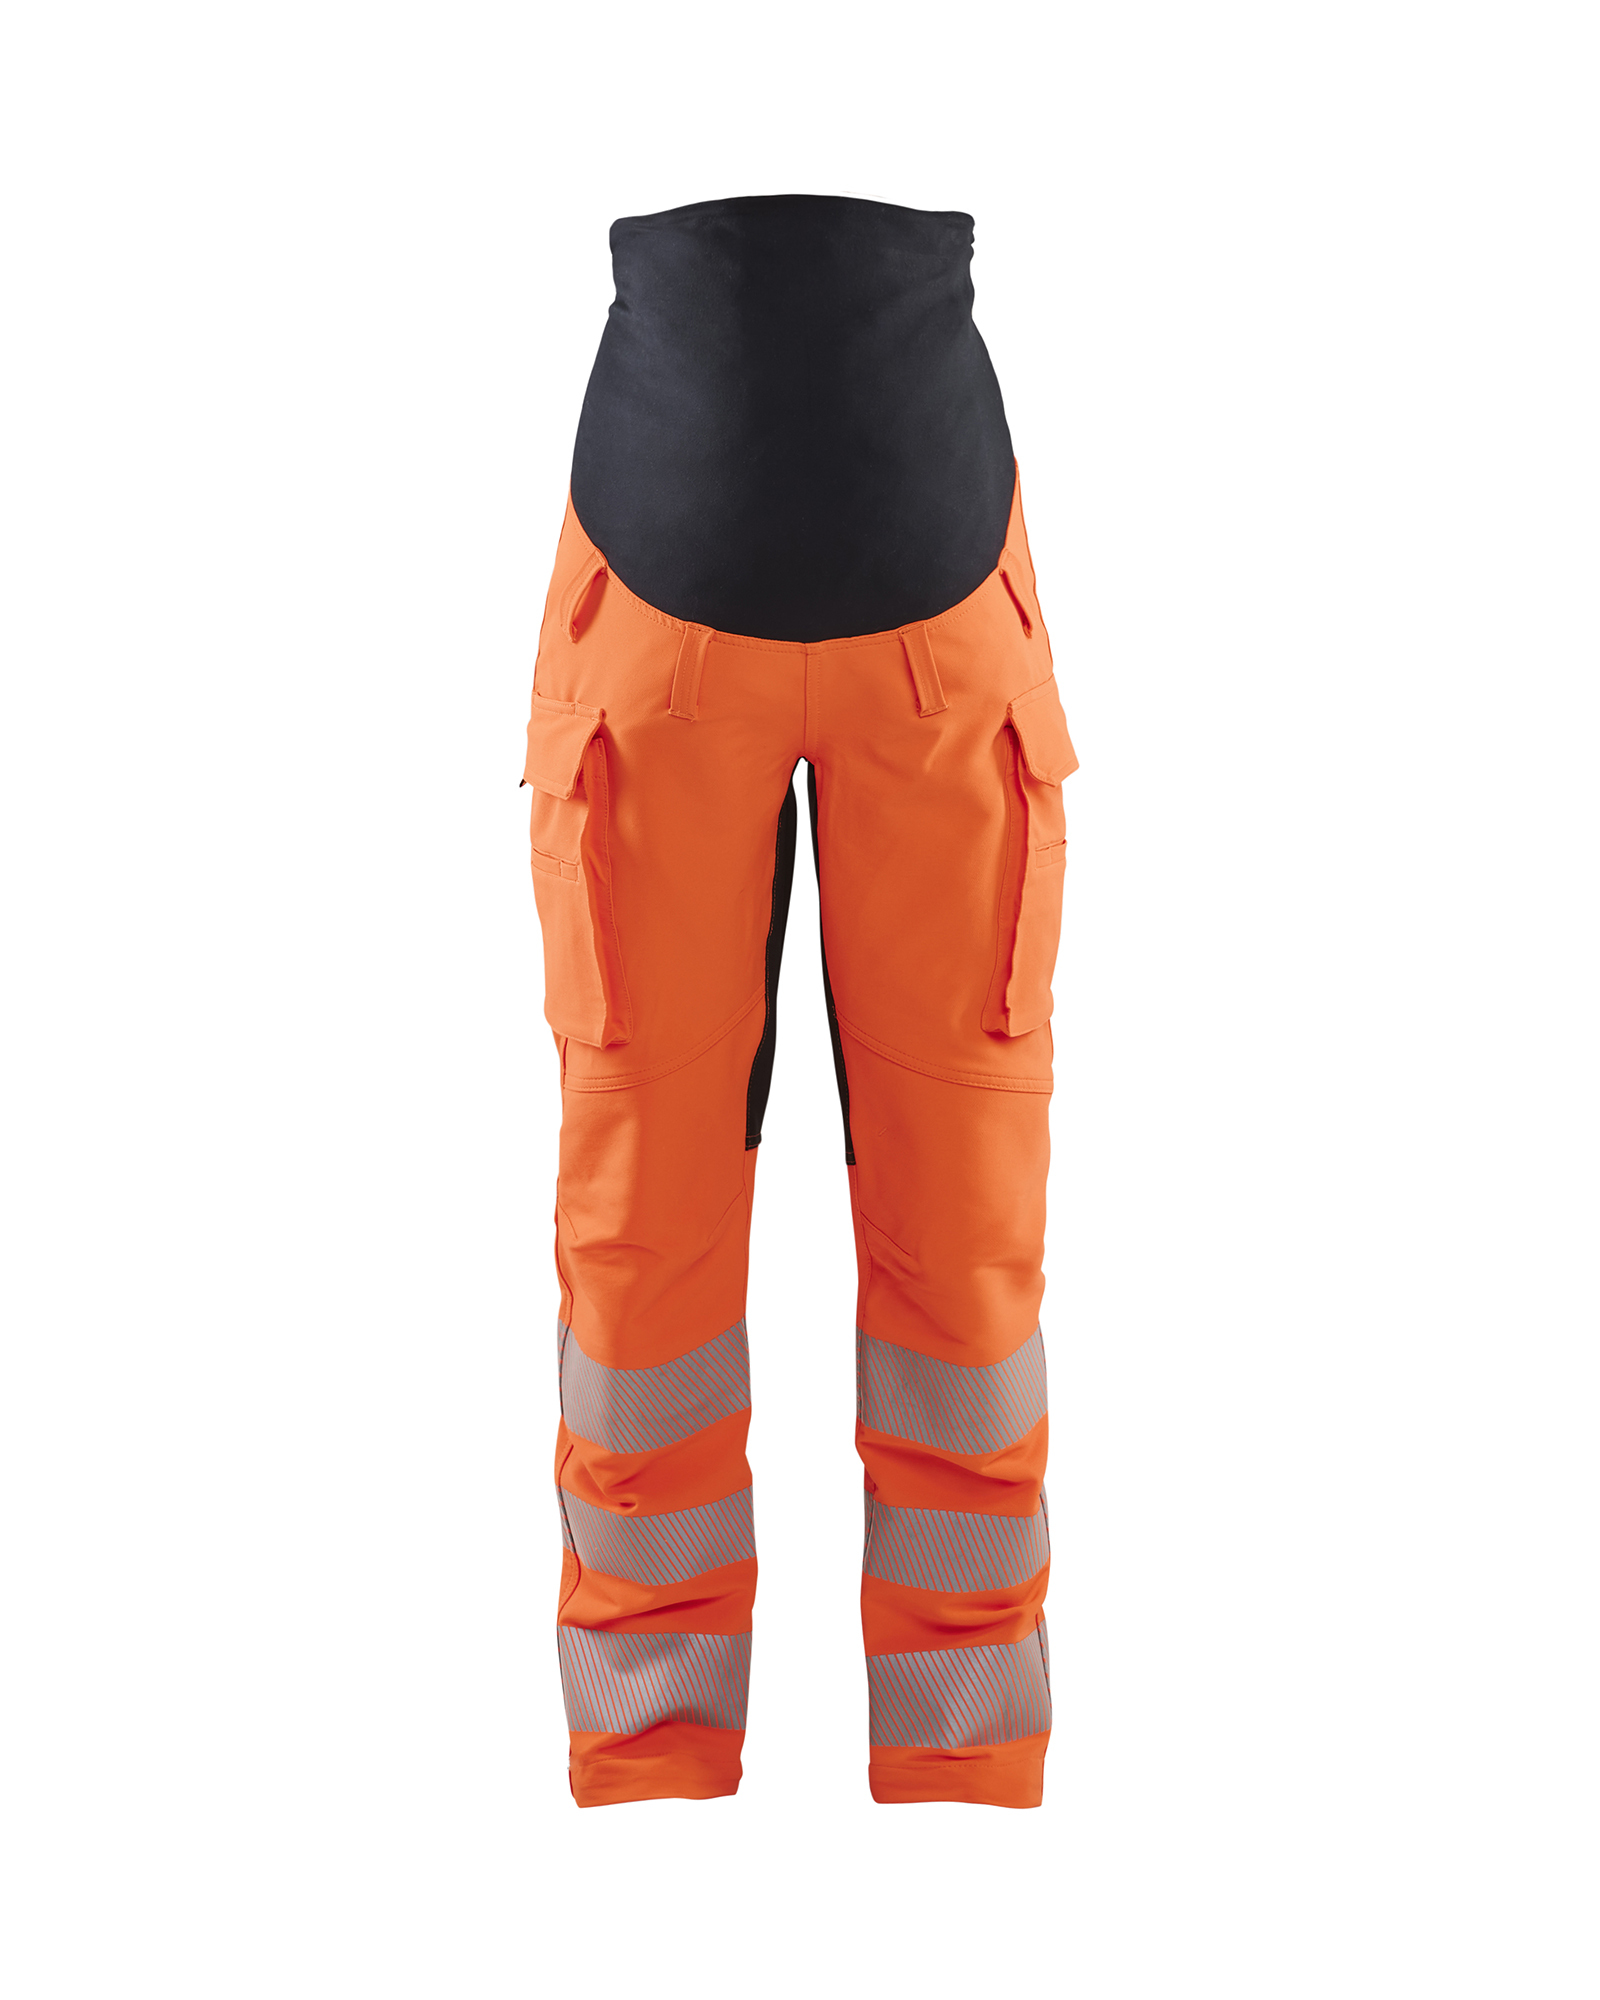 Pantalon de grossesse haute-visibilité stretch 4D Blåkläder 7100 Orange fluo/Noir Blaklader - 710016425399